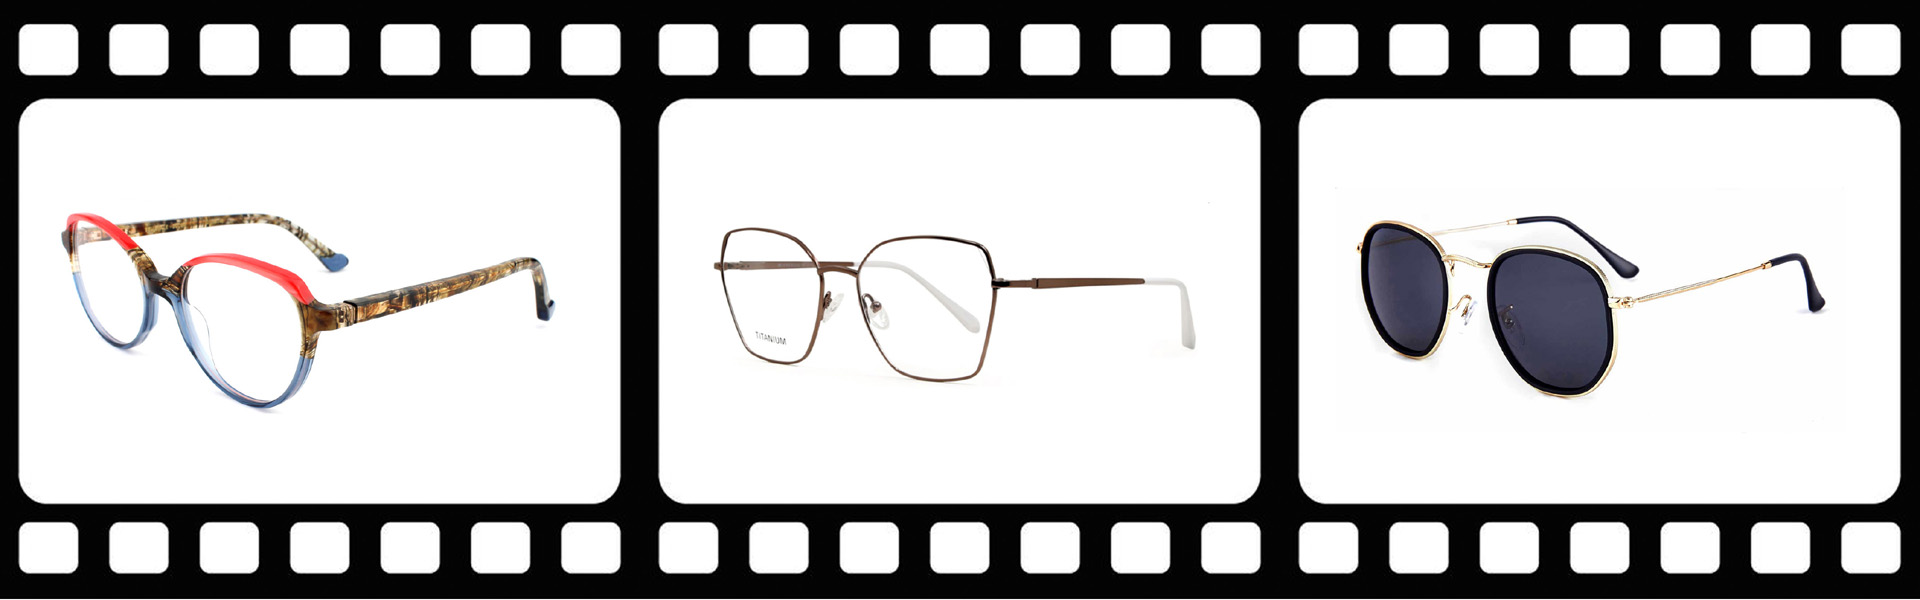 준비되어있는 재고 안경, 안경, 준비된 재고 안경,Wenzhou Ruite Optics Co.,Ltd